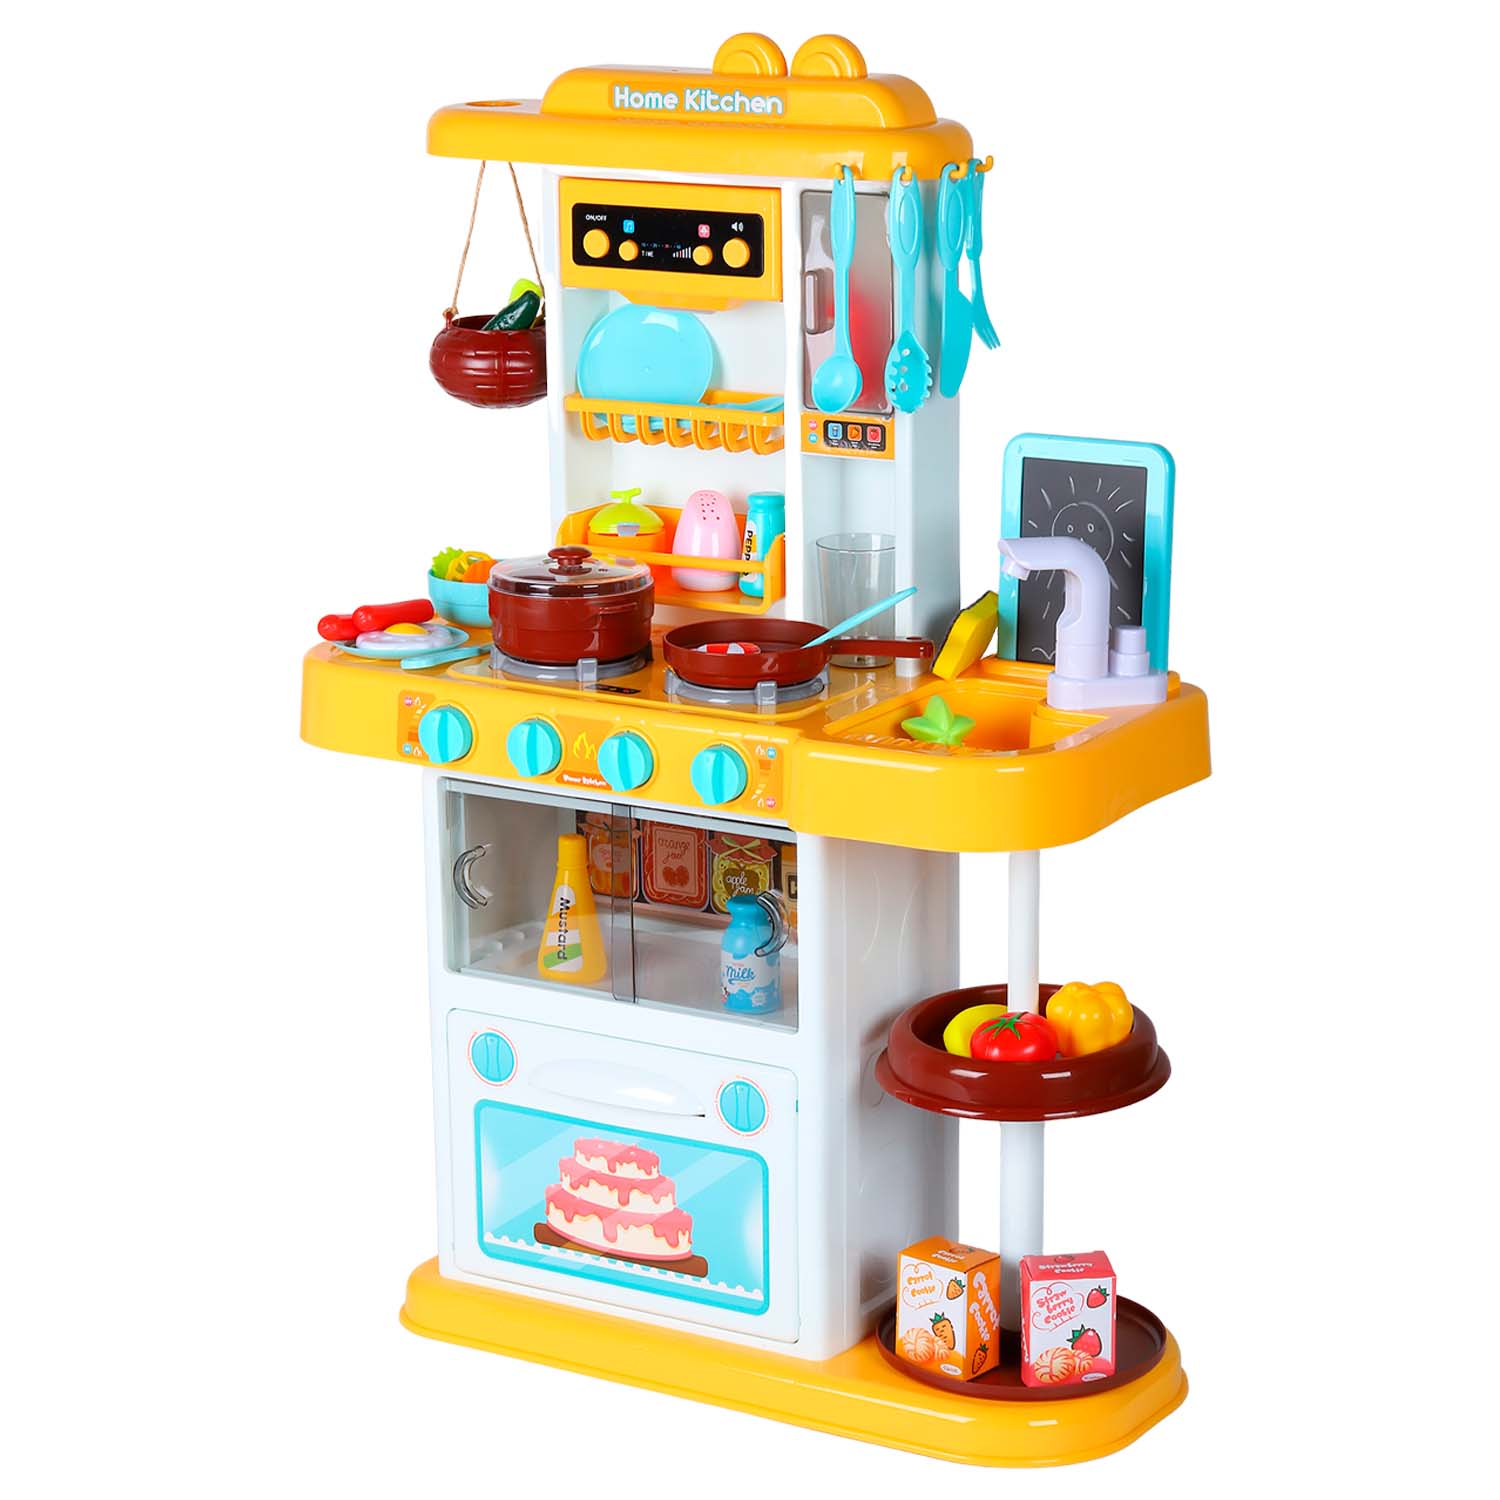 Игровой набор Amore Bello "Кухня",с паром, кран с водой, свет, звук, в комплекте 43 предмета ,бежева